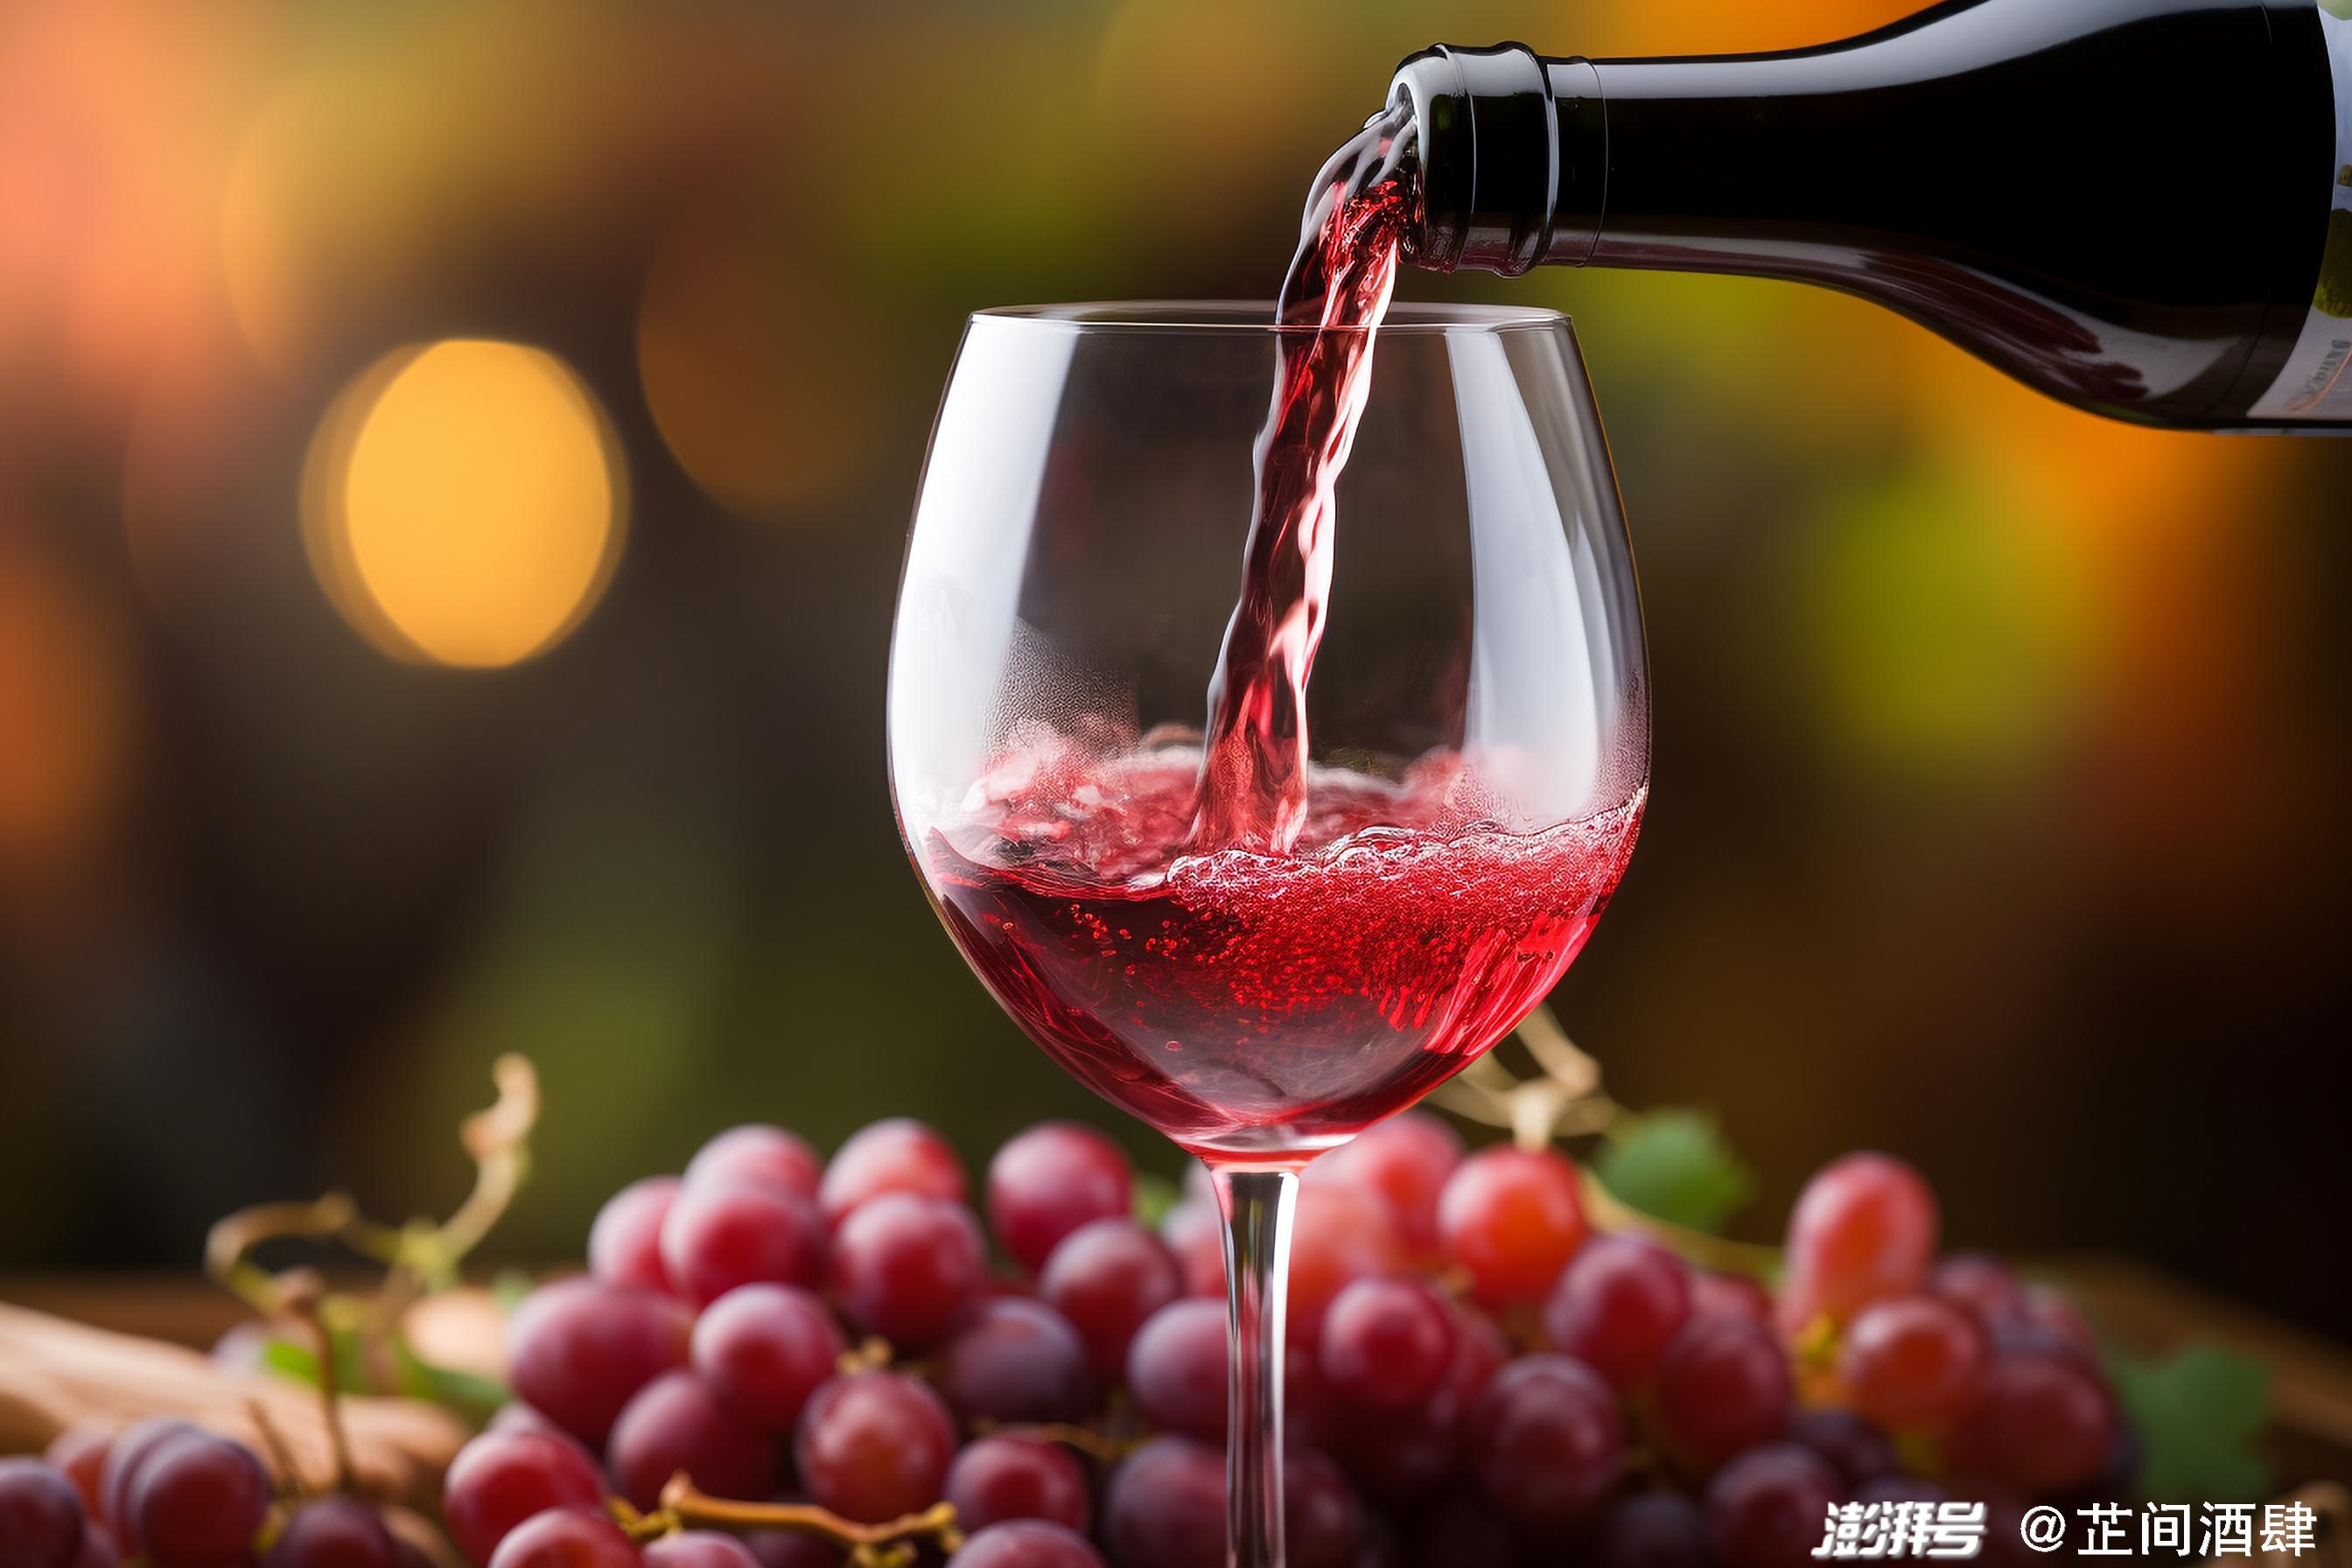 品酒新手指南:如何衡量一杯葡萄酒的好坏?